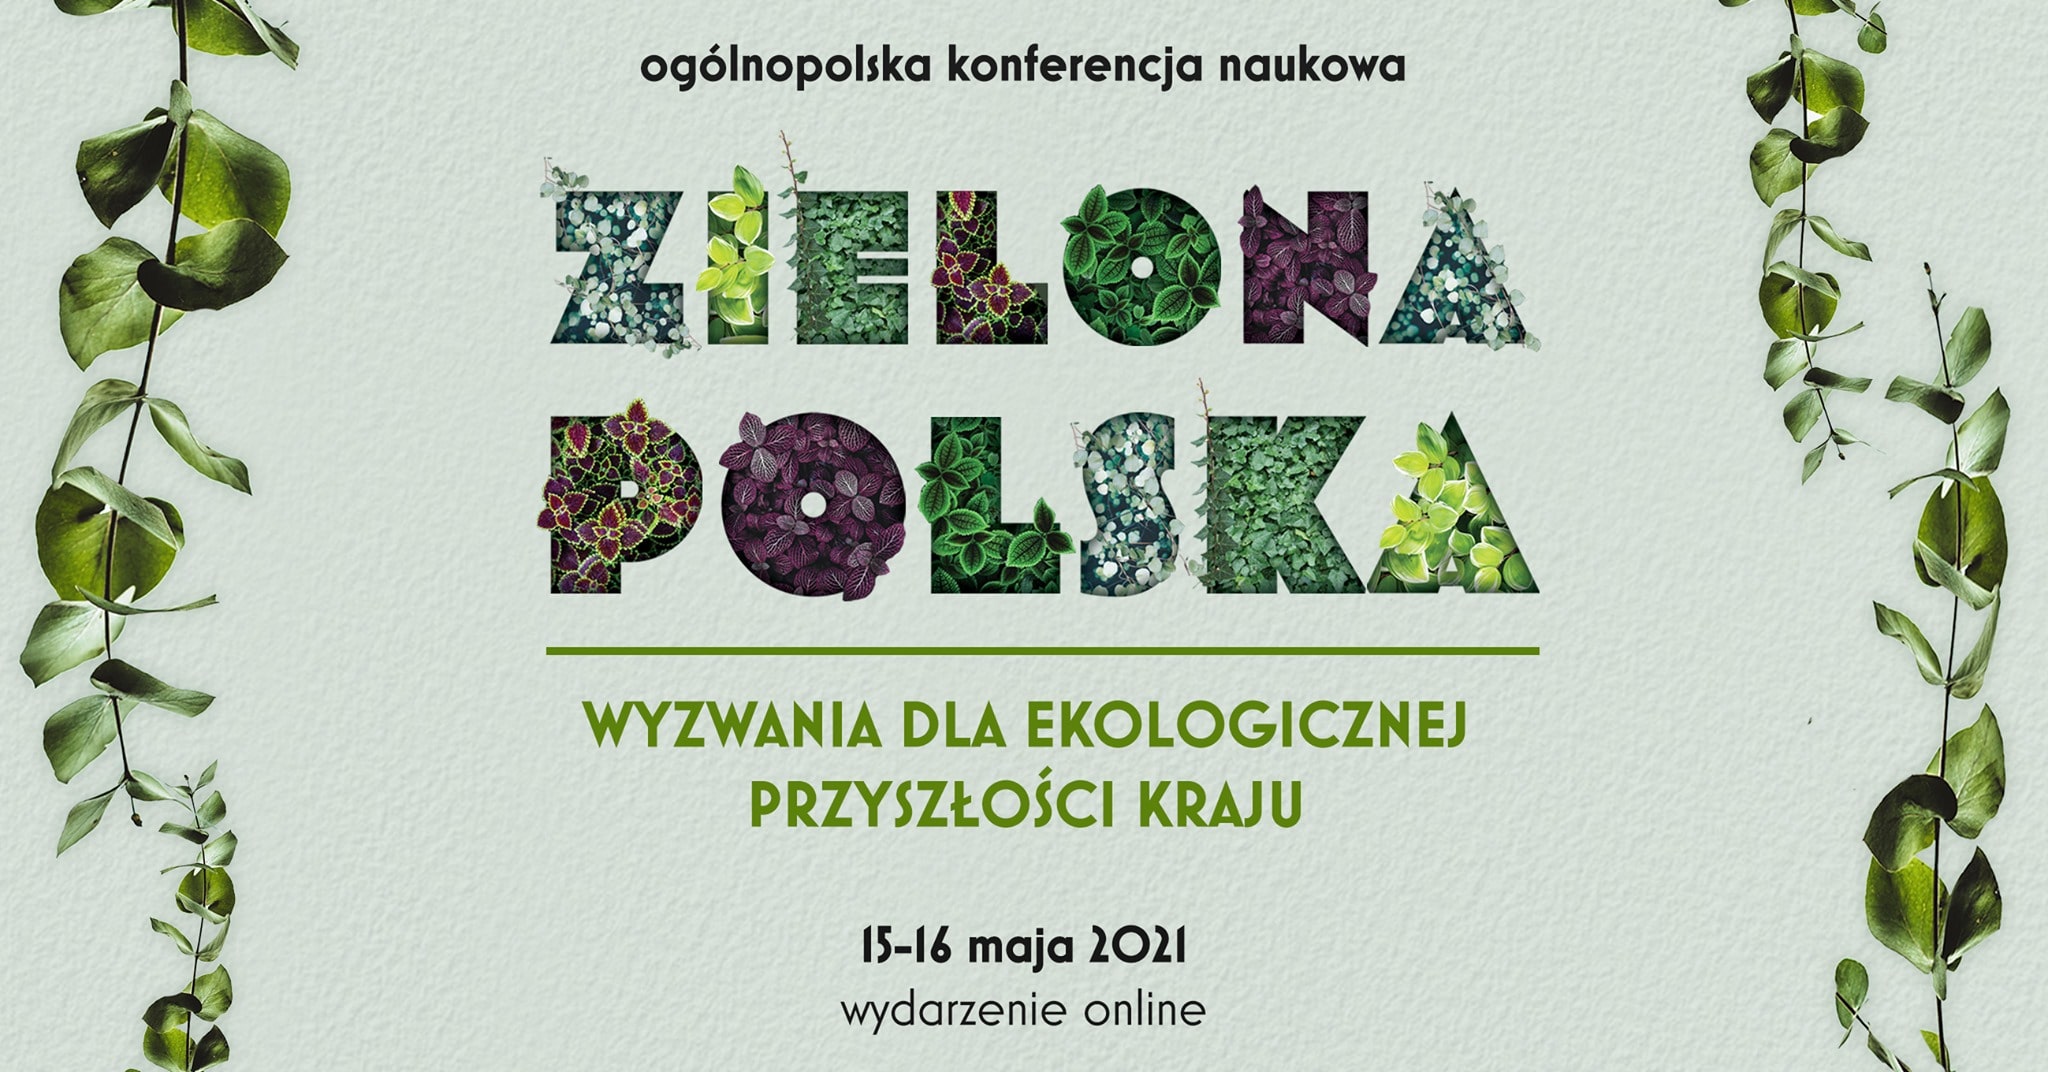 Grafika promująca ogólnopolską konferencję naukową Zielona Polska